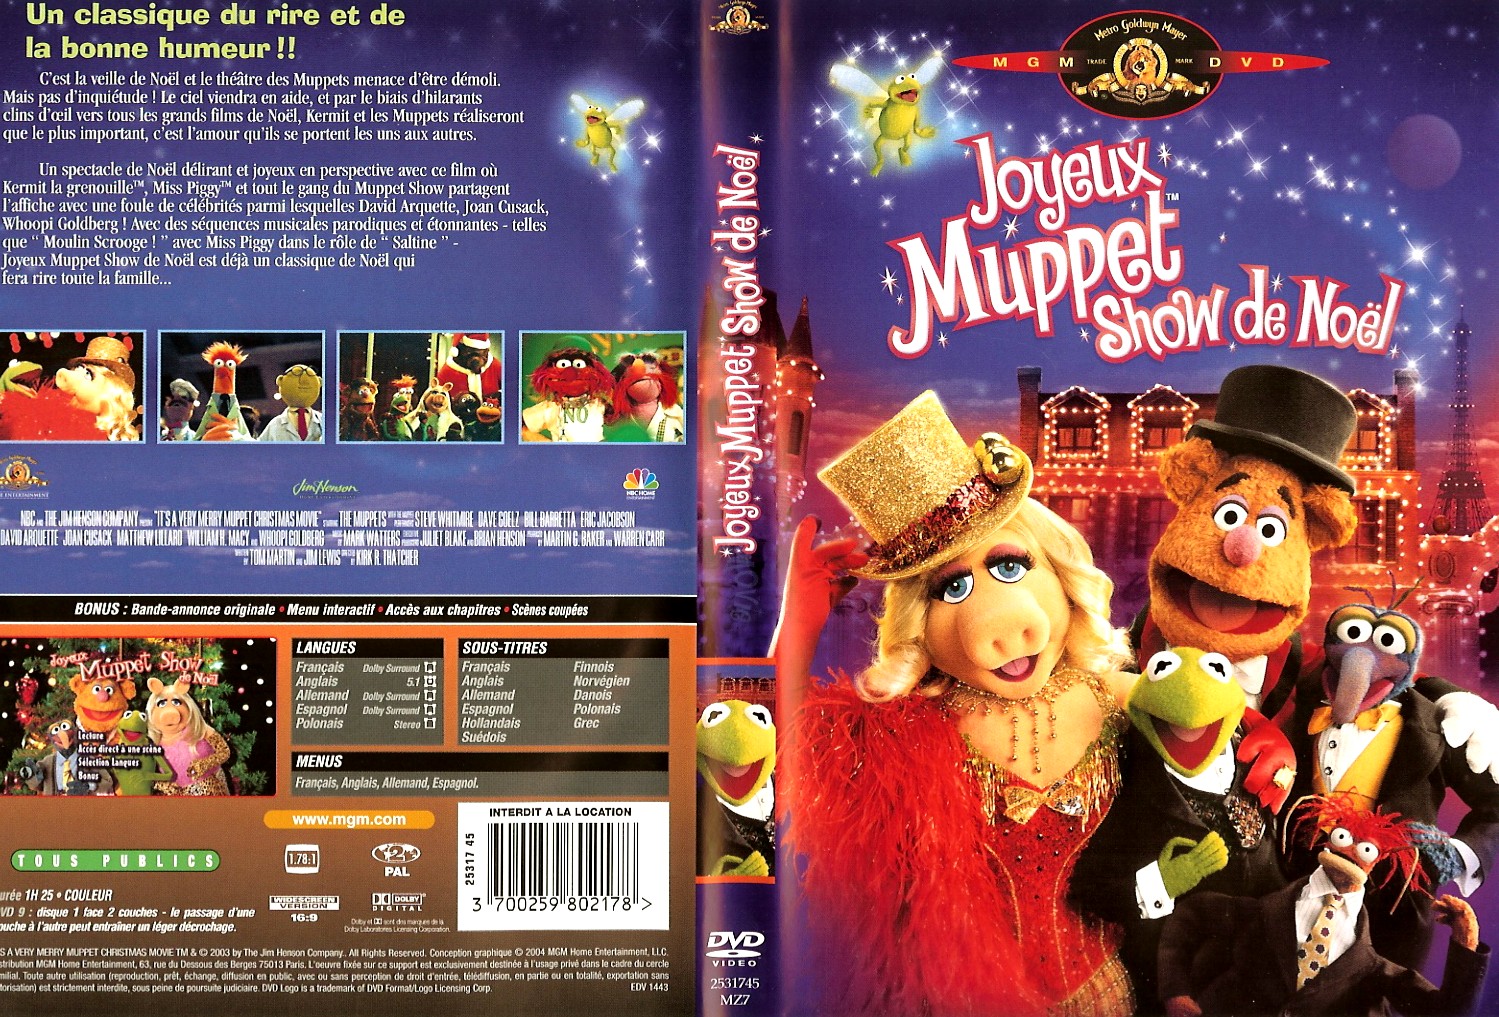 Jaquette DVD Joyeux muppet show de noel